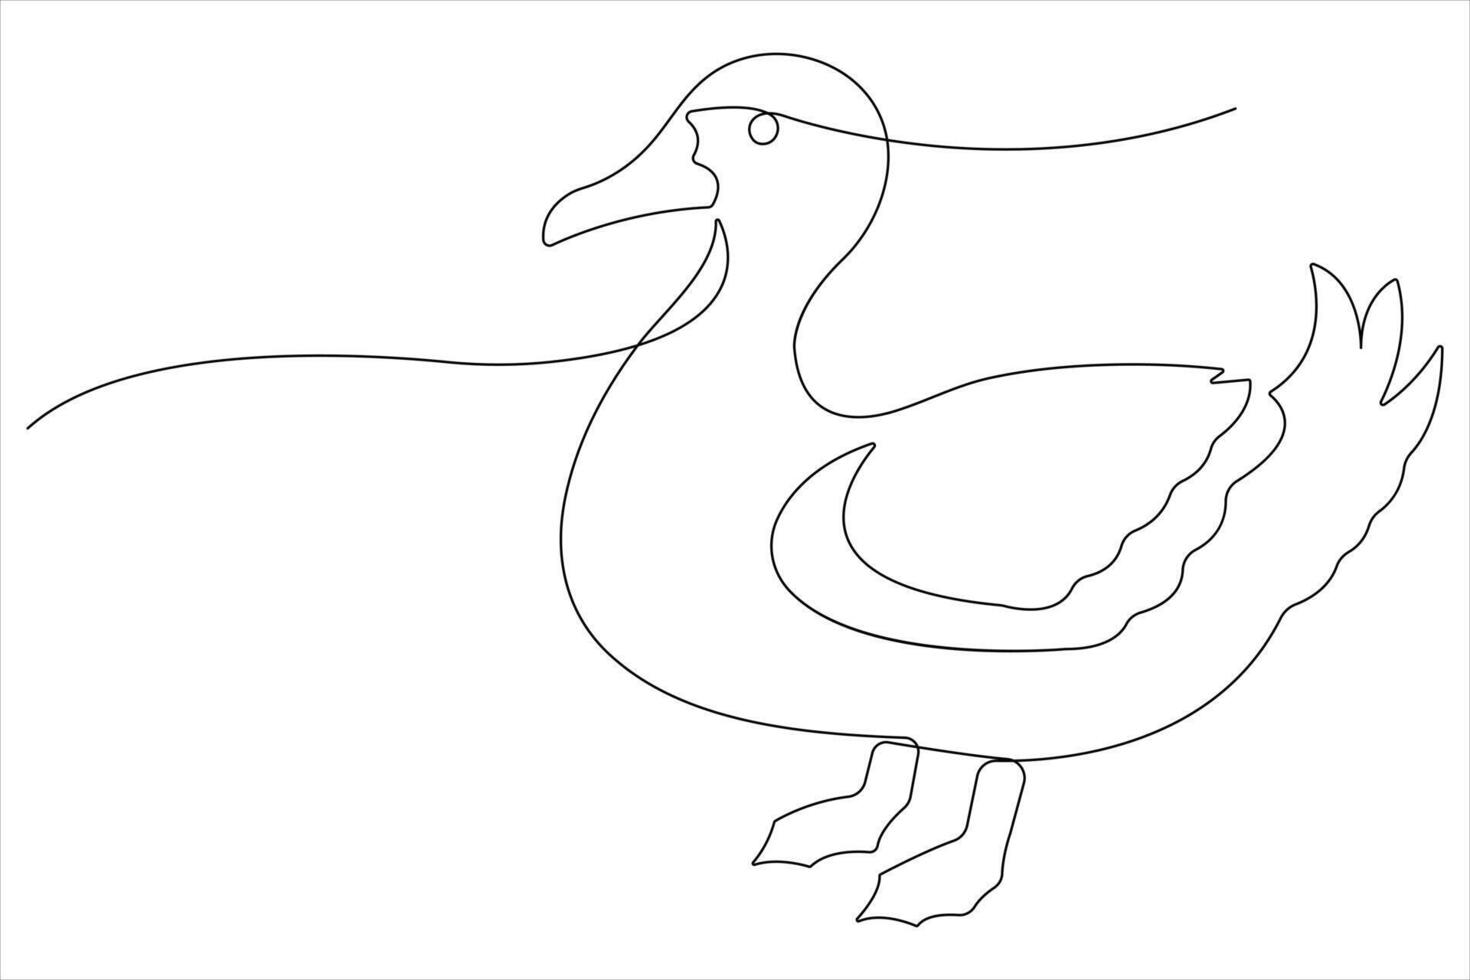 kontinuerlig enda linje konst teckning av sällskapsdjur djur- Anka begrepp översikt vektor illustration